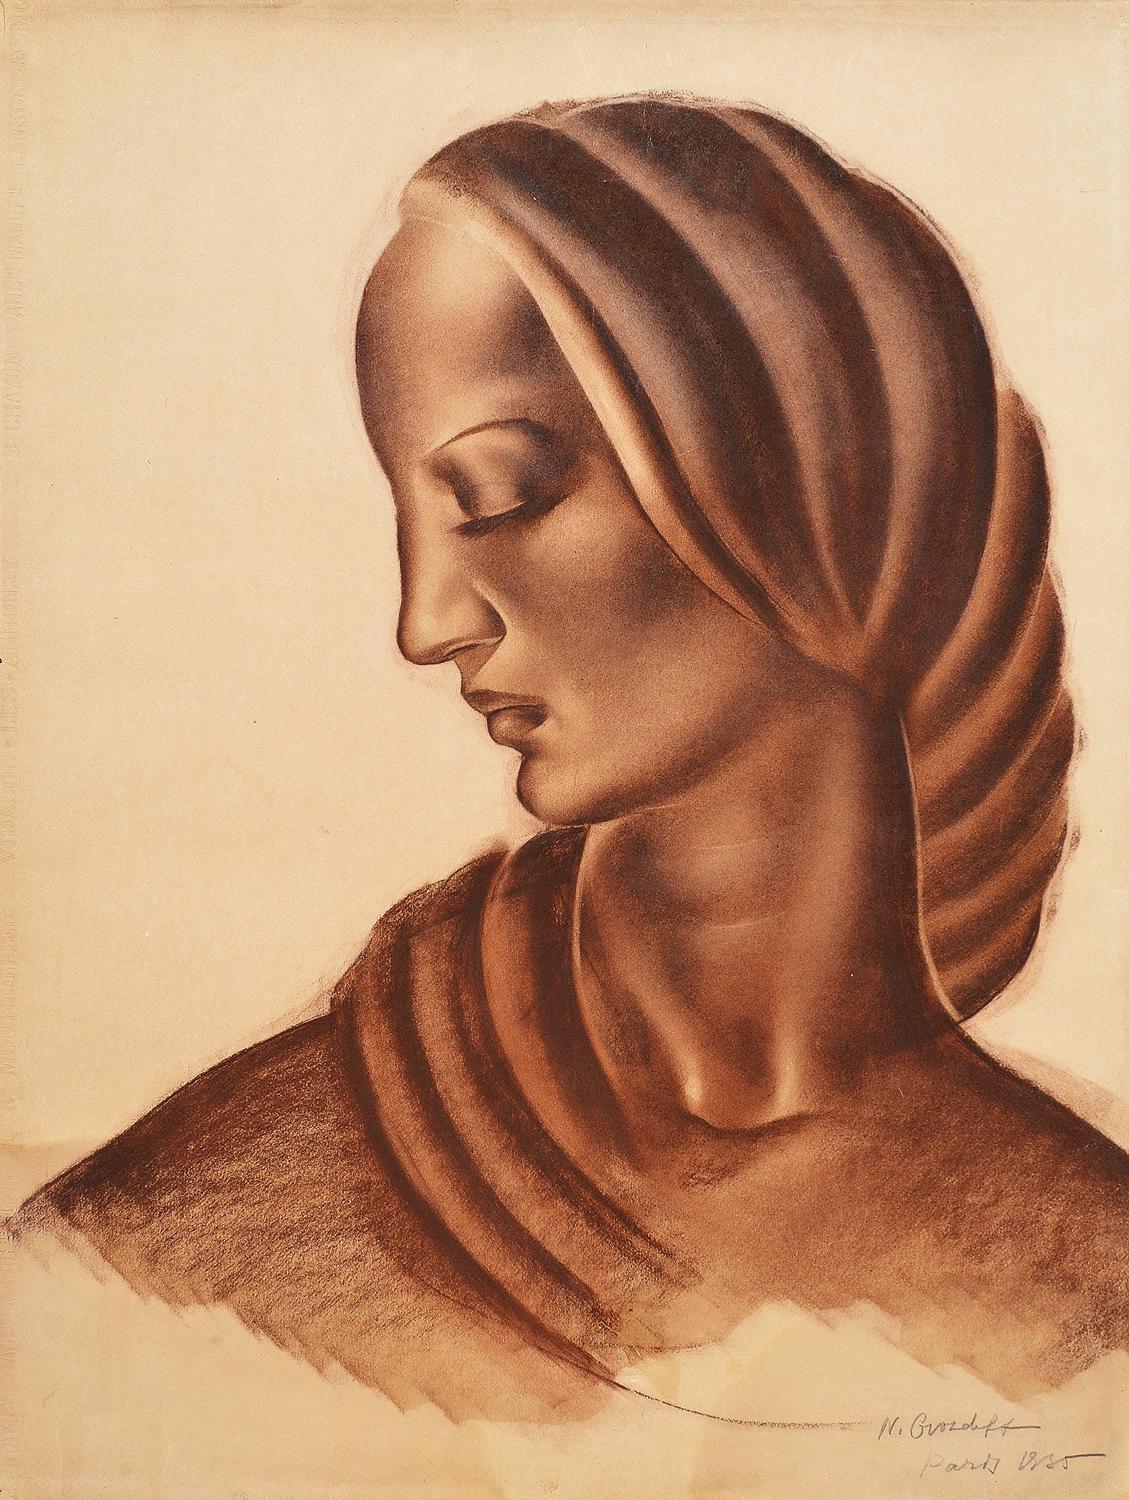 Portrait d'une femme, dessin au fusain, 20e siècle russe - Art de N. Grosdovv